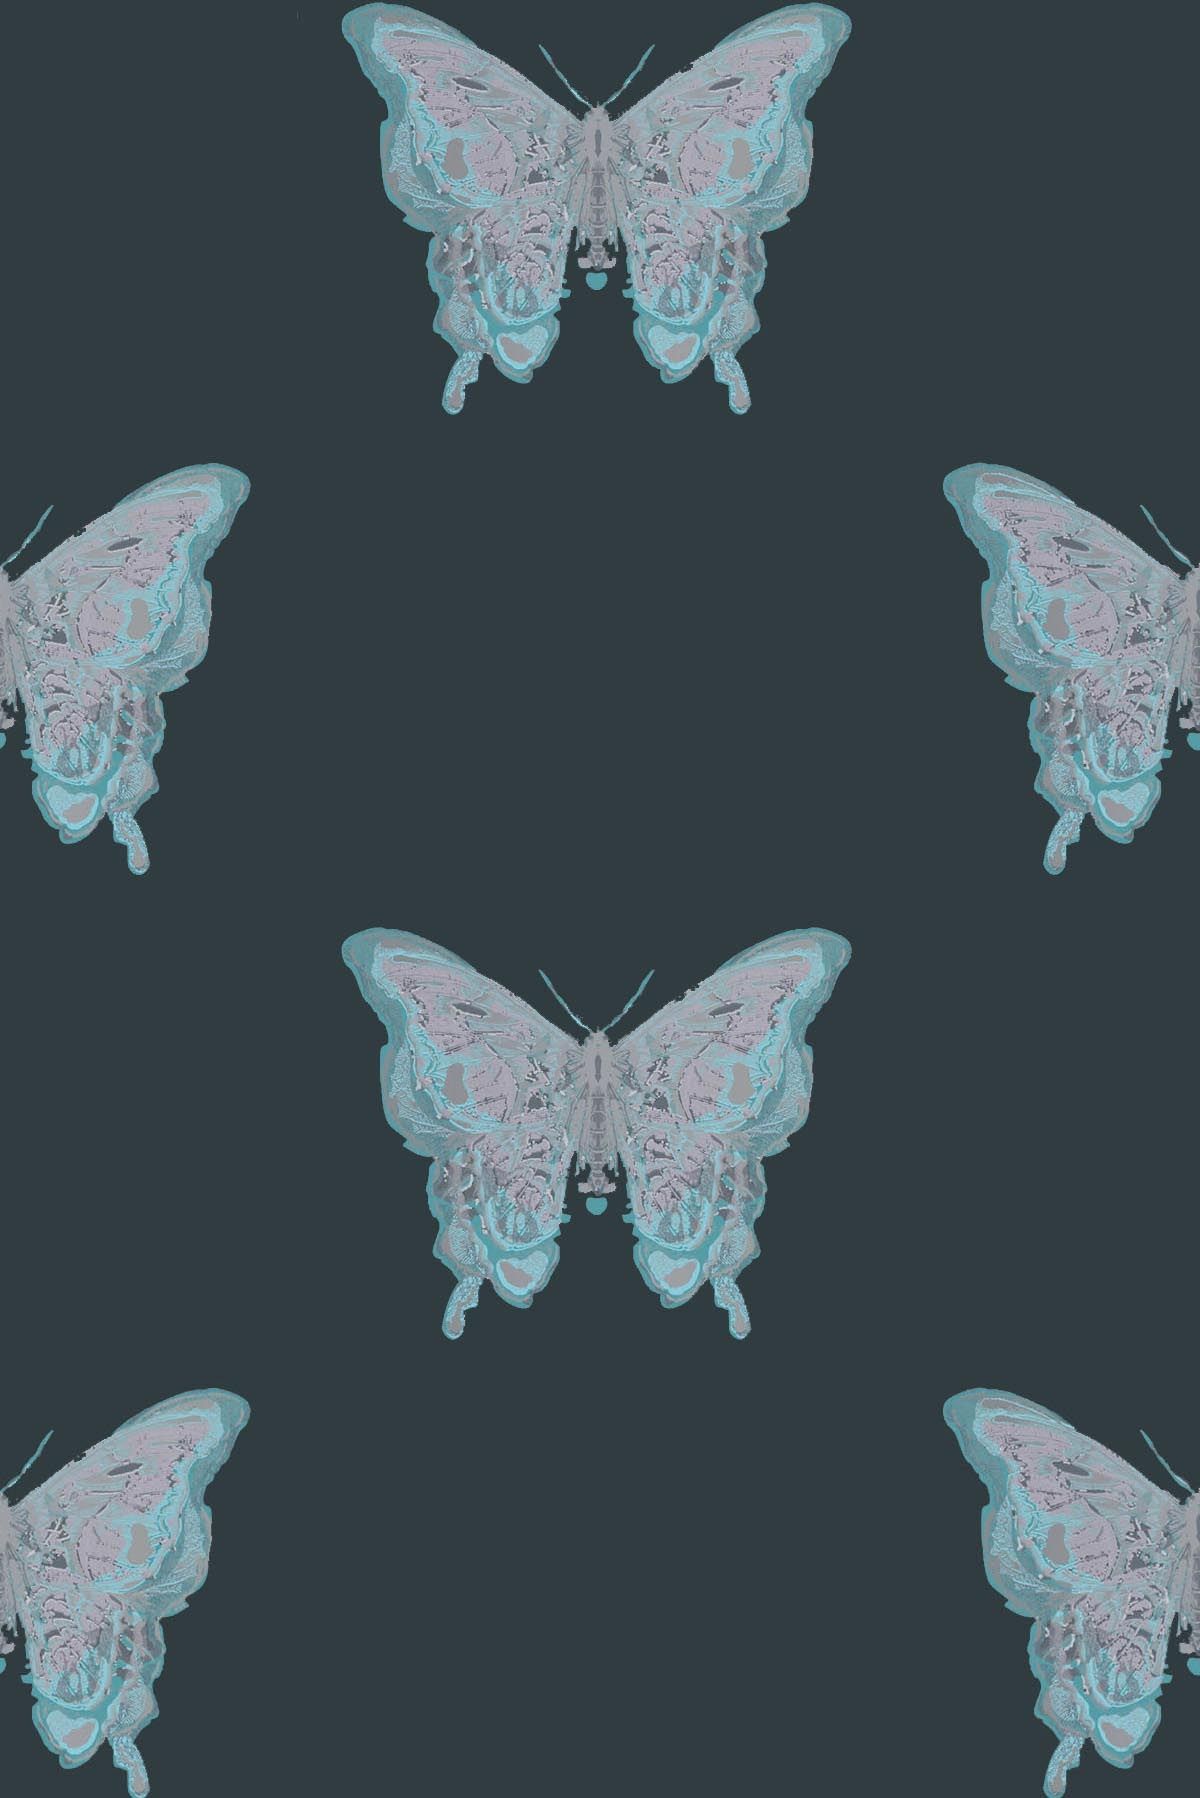 ハンドプリント壁紙,昆虫,バタフライ,蛾と蝶,蛾,ピンク